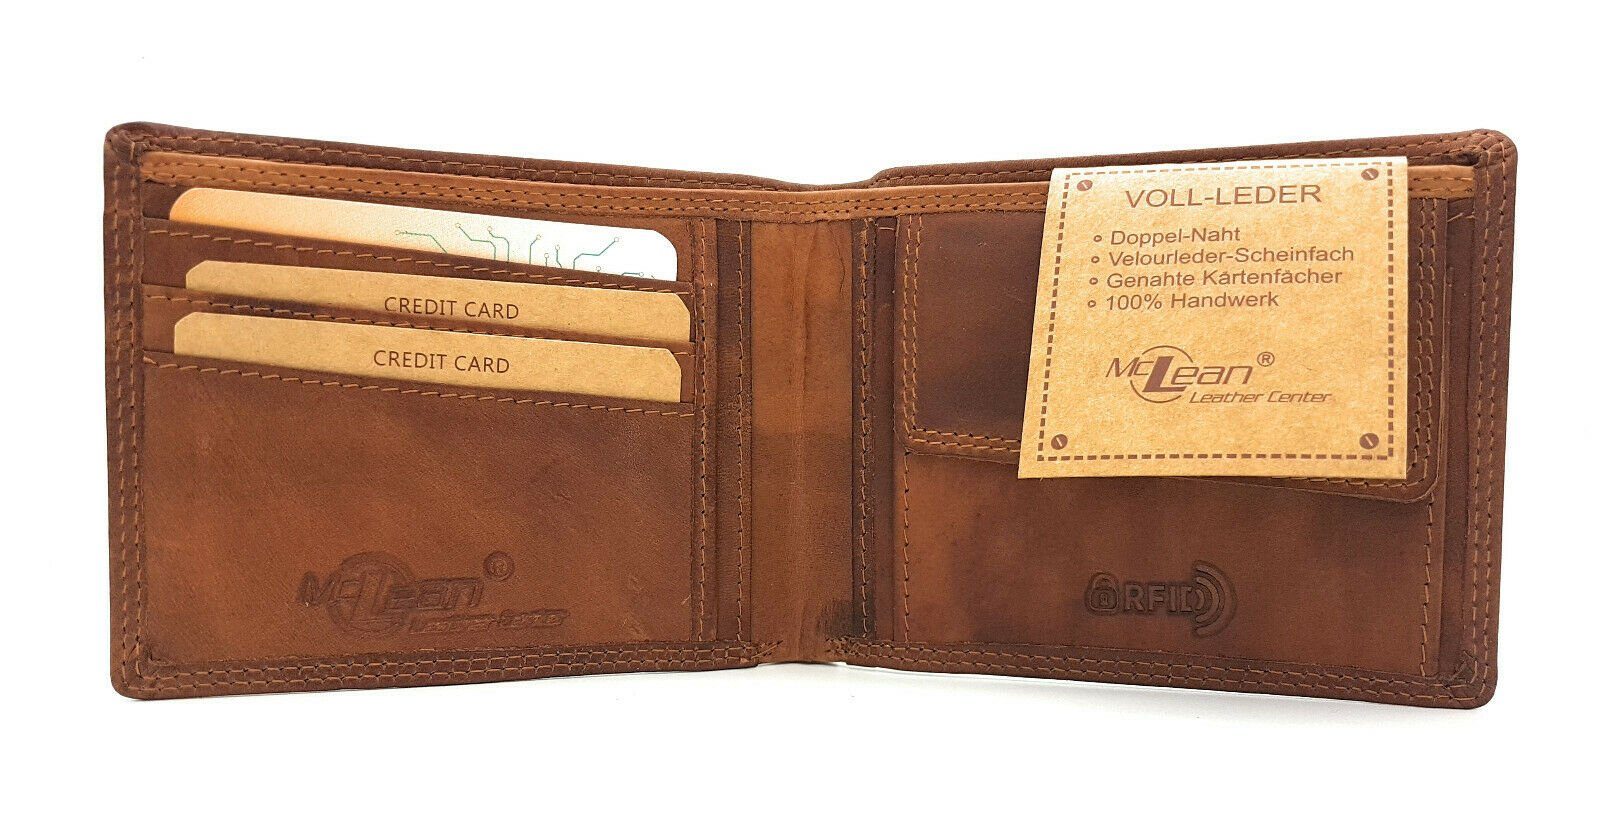 McLean Büffel echt Geldbörse Leder Schutz, mit RFID flach, Portemonnaie Voll-Leder